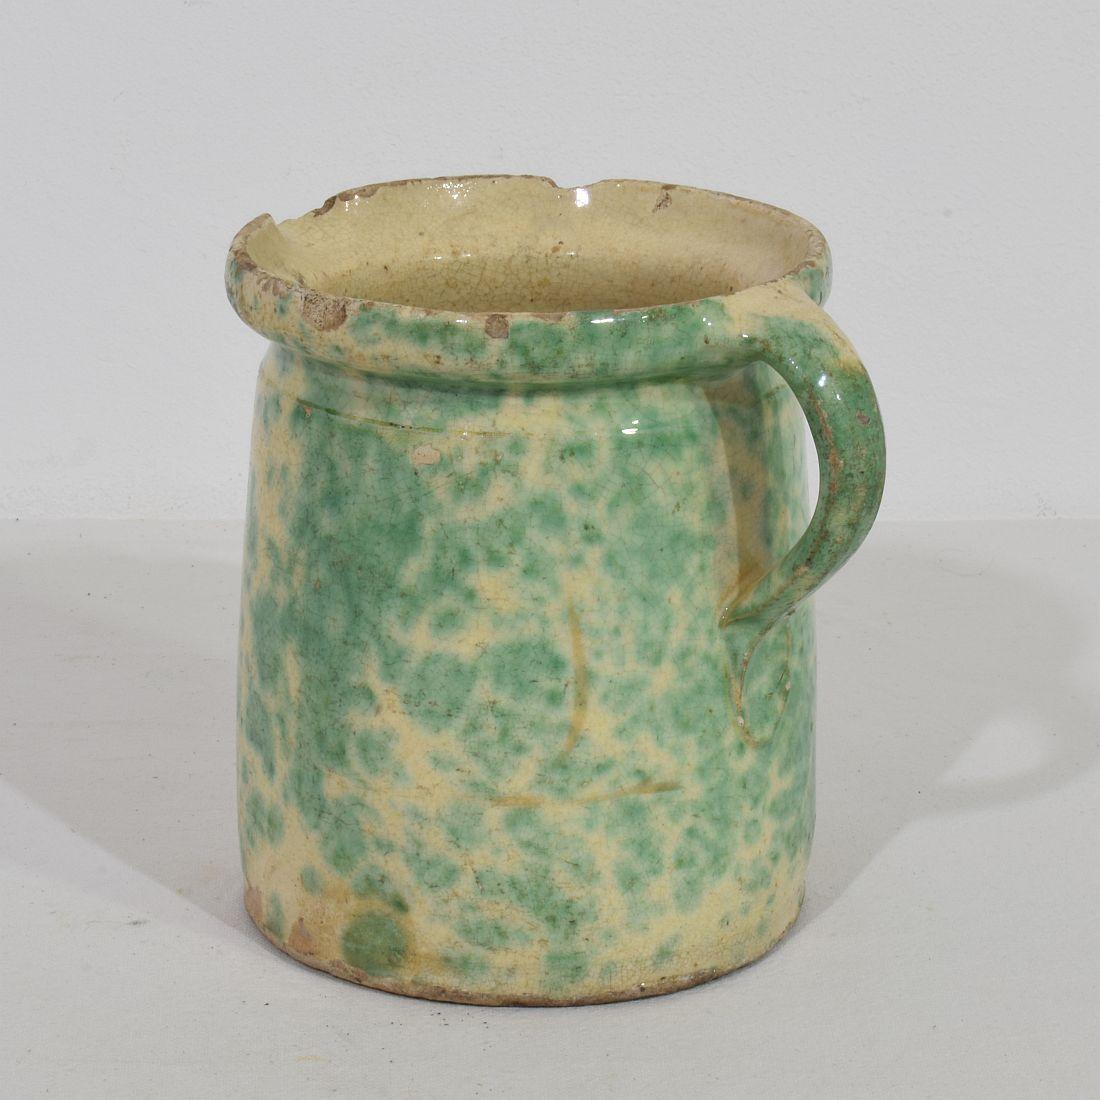 Magnifique pièce de poterie alsacienne avec une glaçure verte très rare,
France, vers 1850-1900.
Bon état mais altéré.